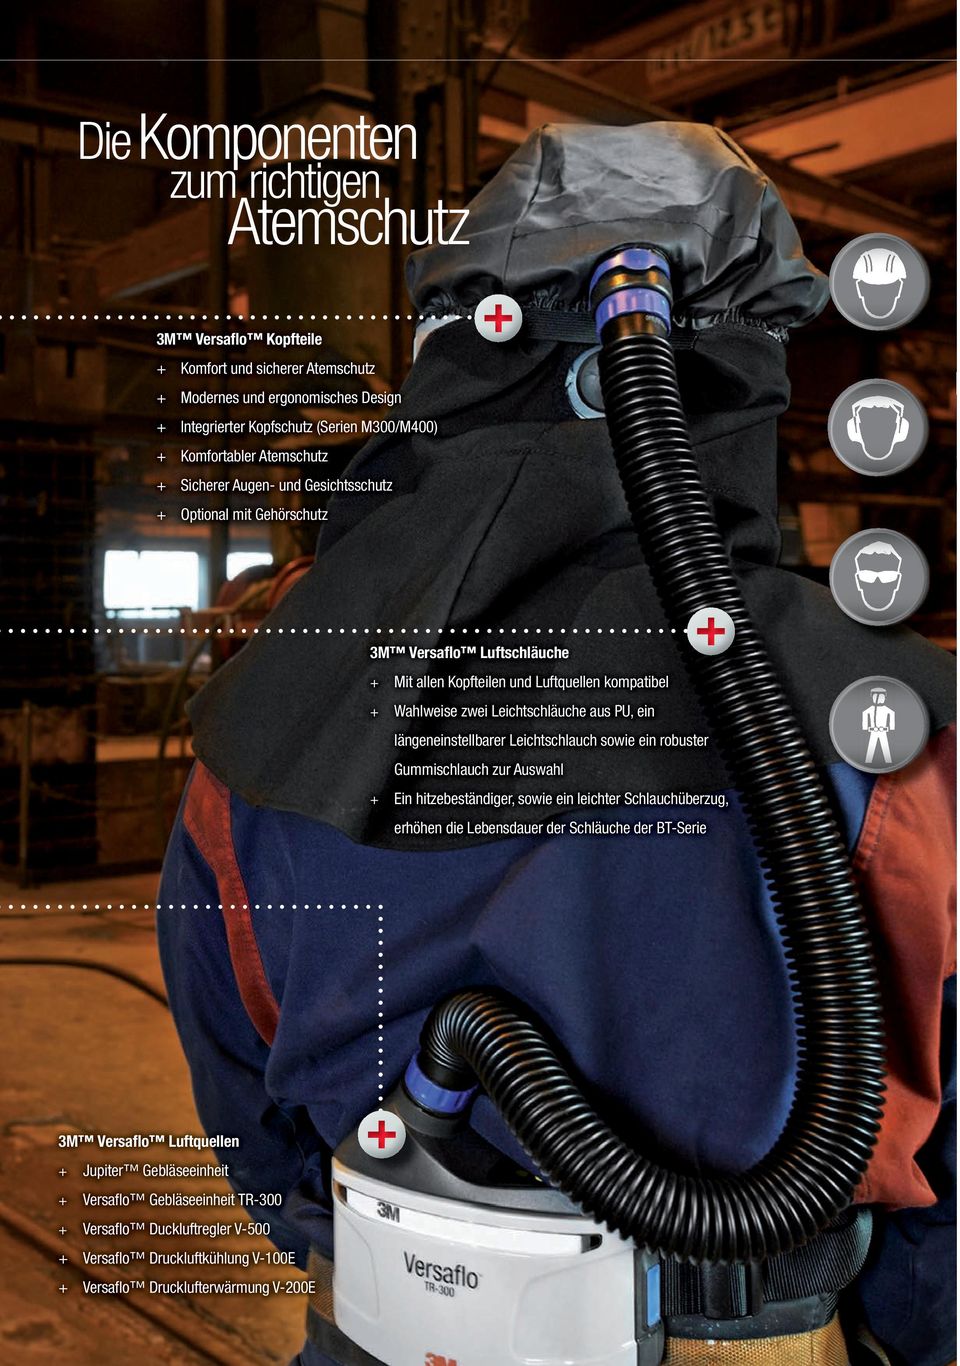 Kopfschutz (Serien M300/M400) Komfortabler Atemschutz Sicherer Augen- und Gesichtsschutz Optional mit Gehörschutz Luftschläuche Mit allen Kopfteilen und Luftquellen kompatibel Wahlweise zwei